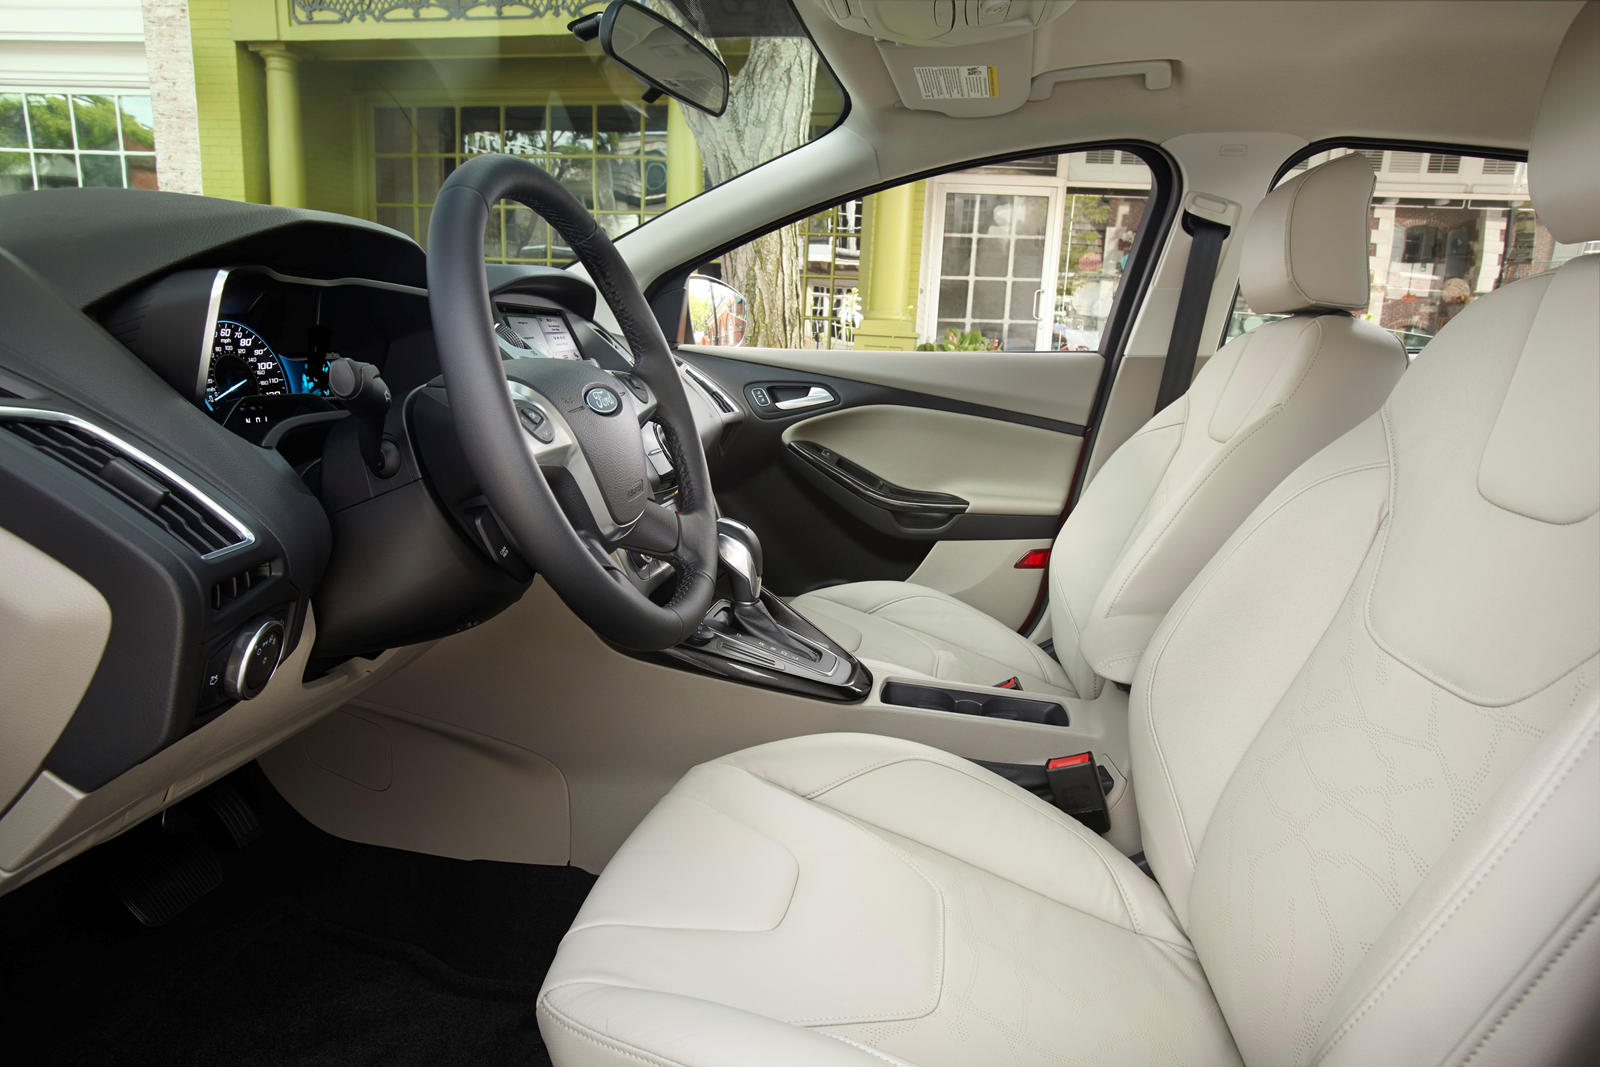 2013 Ford Focus Electric Interior 3